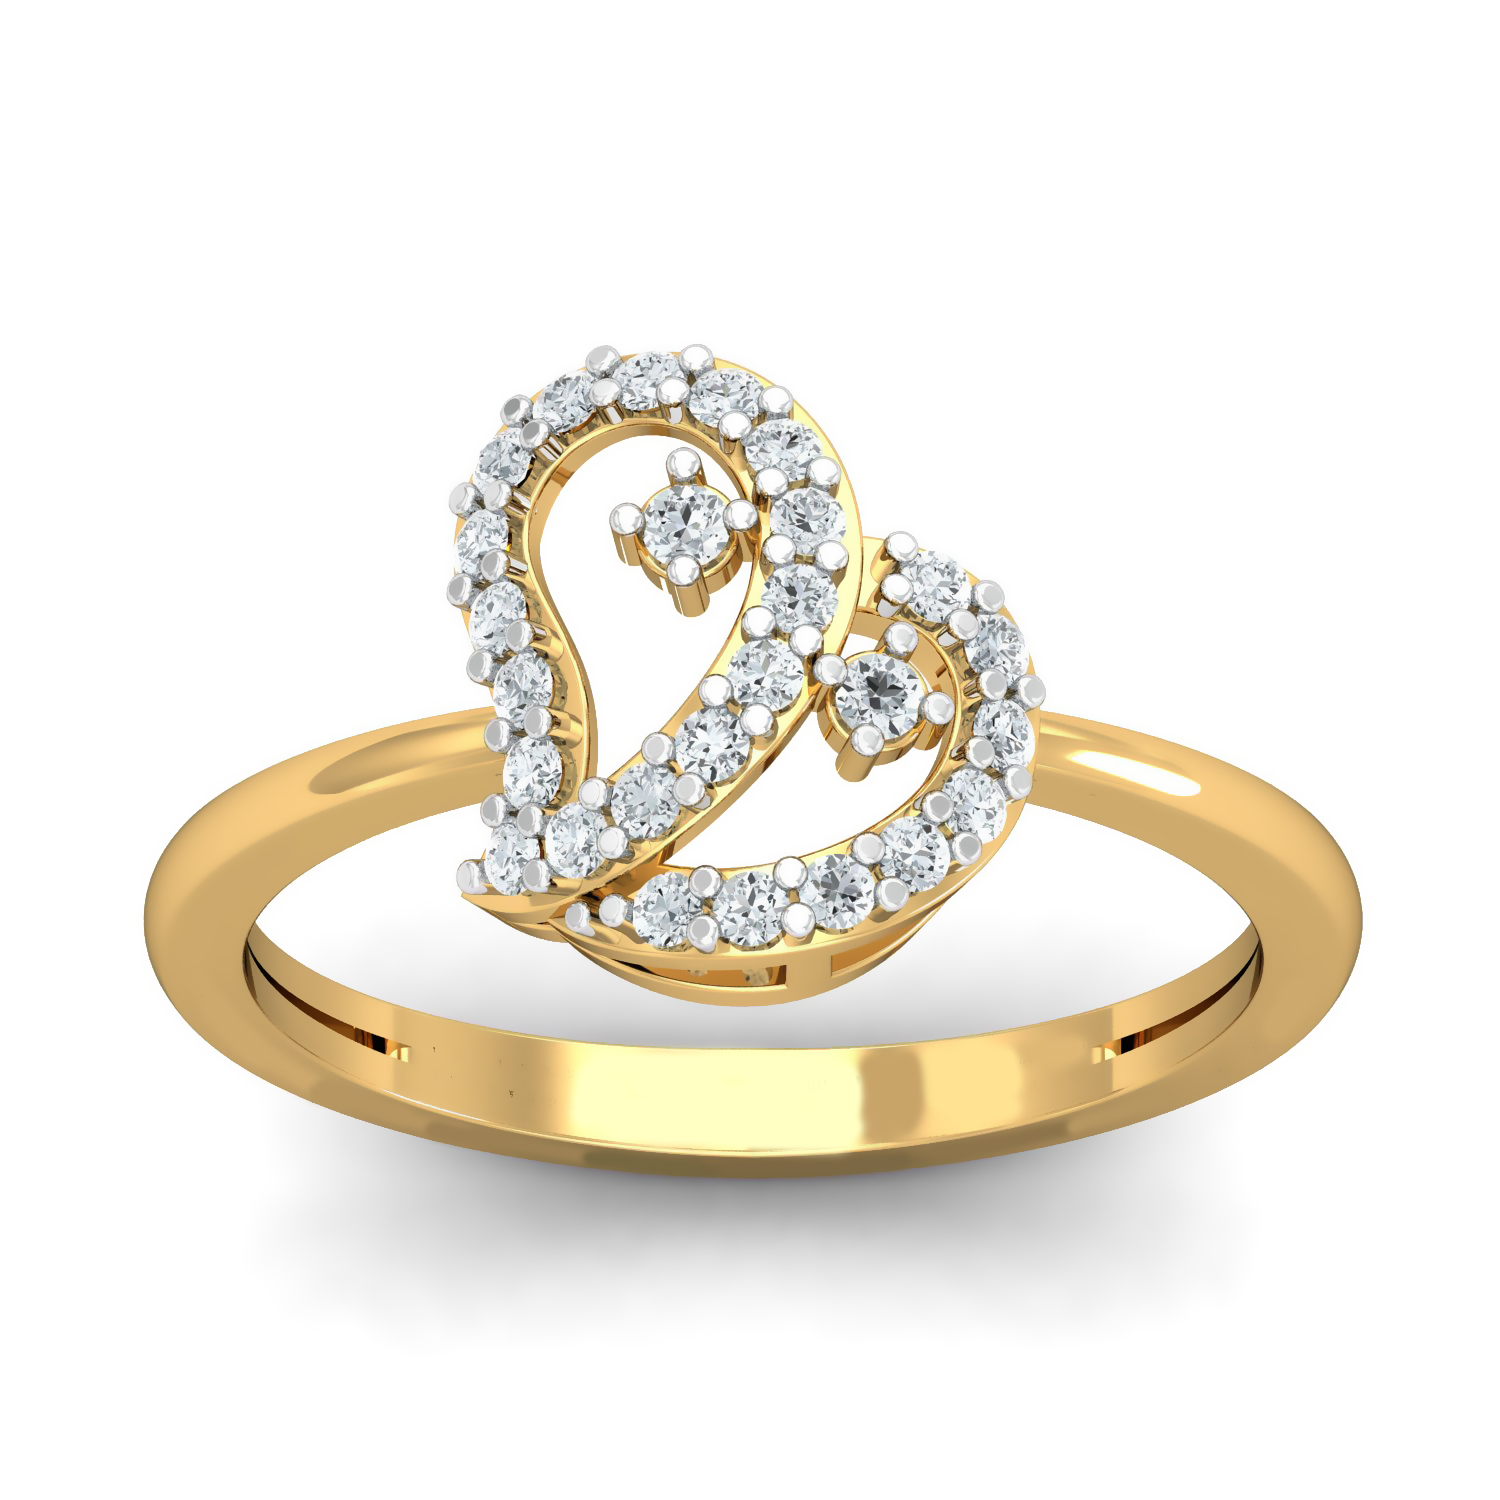 Pierce Your Heart' 'Moi et Toi' Diamond Ring – AnaKatarina Design